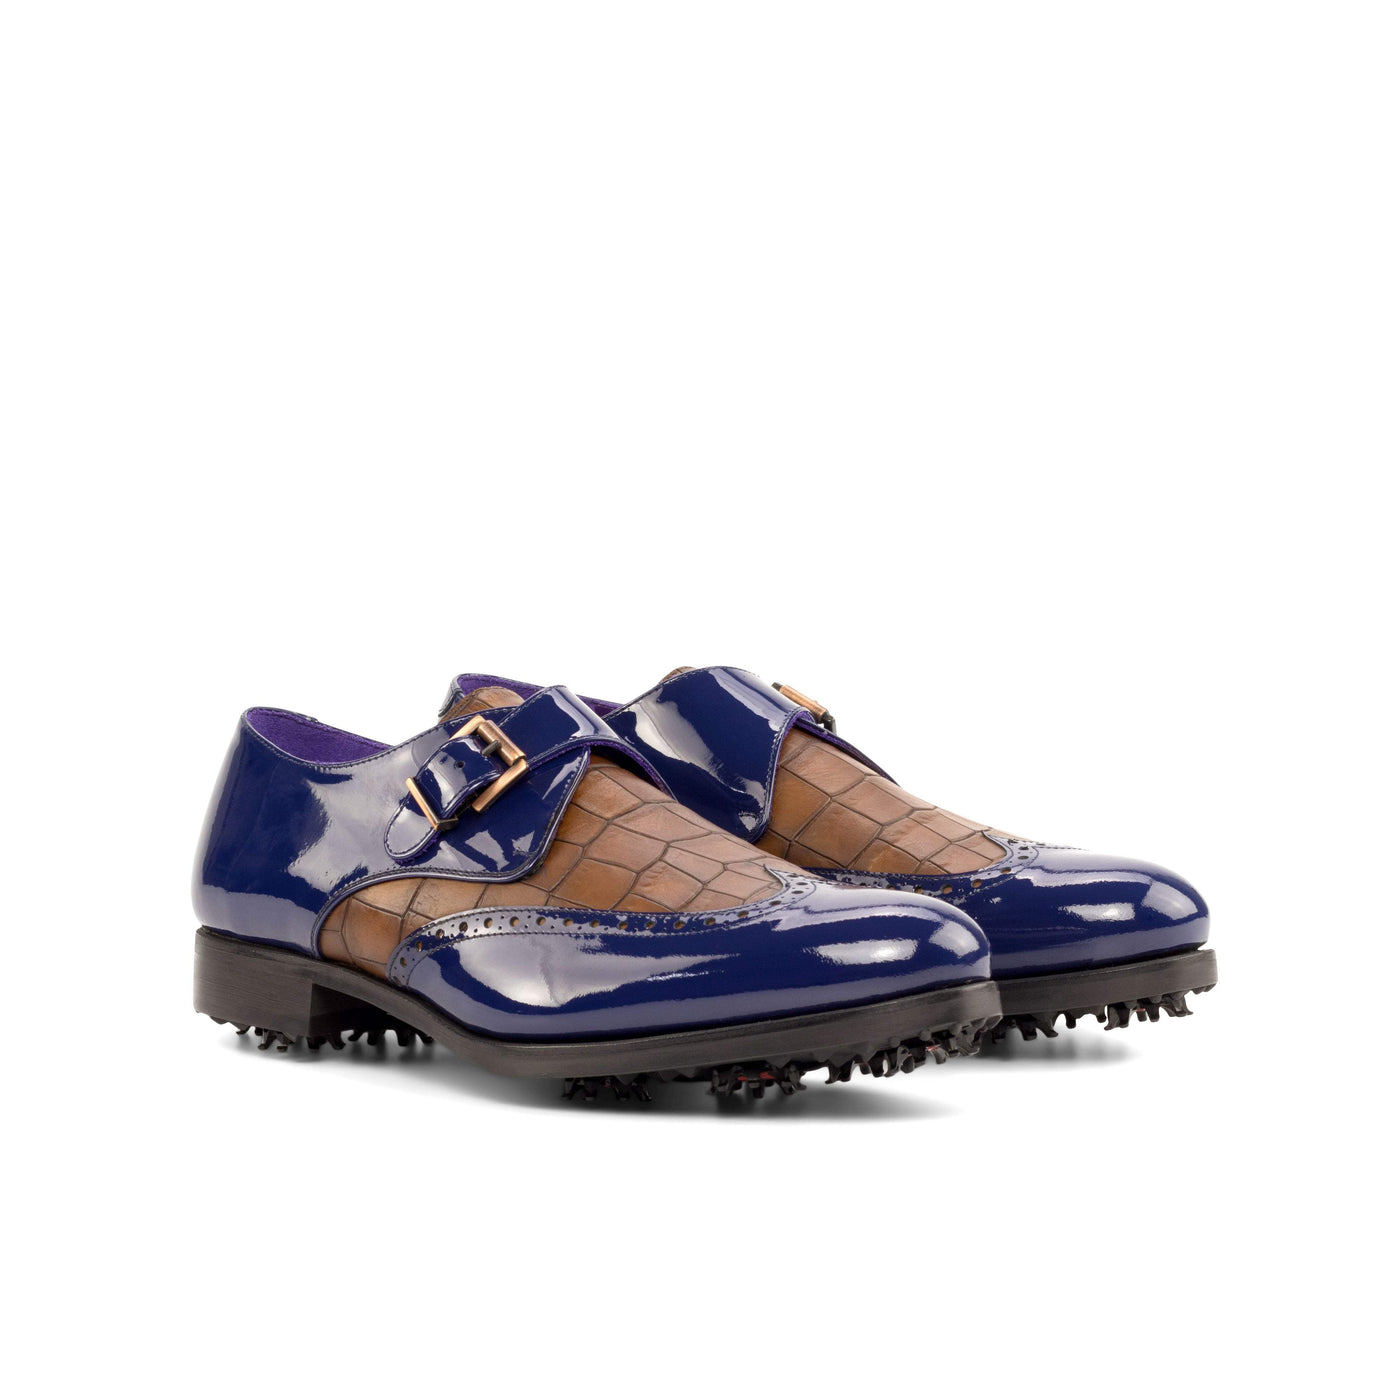 Men's Single Monk Golf Shoes Leather Blue Brown 5032 3- MERRIMIUM